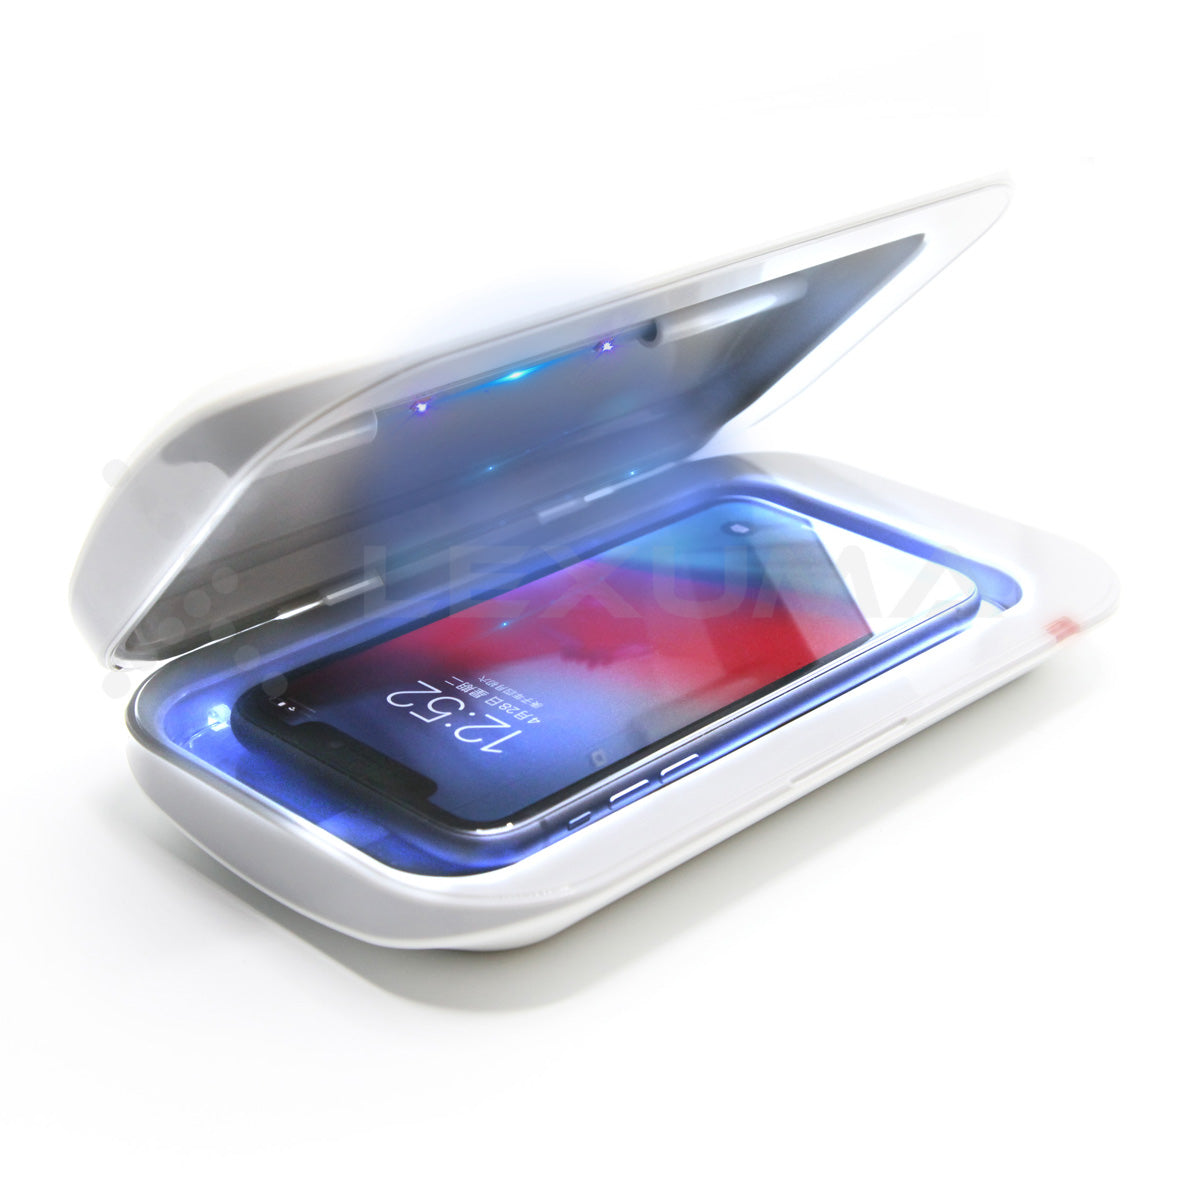 Dimbuyshop Lexuma XGerm Pro LED UV Light Sanitizer for phone disinfection smartphone UV紫外線 消毒器 殺菌 滅菌 細菌 消毒 電話消毒 藏菌量 消毒噴霧 手機消毒盒 手機消毒器 手機如何消毒 手機紫外綫消毒器 流線型設計 cover